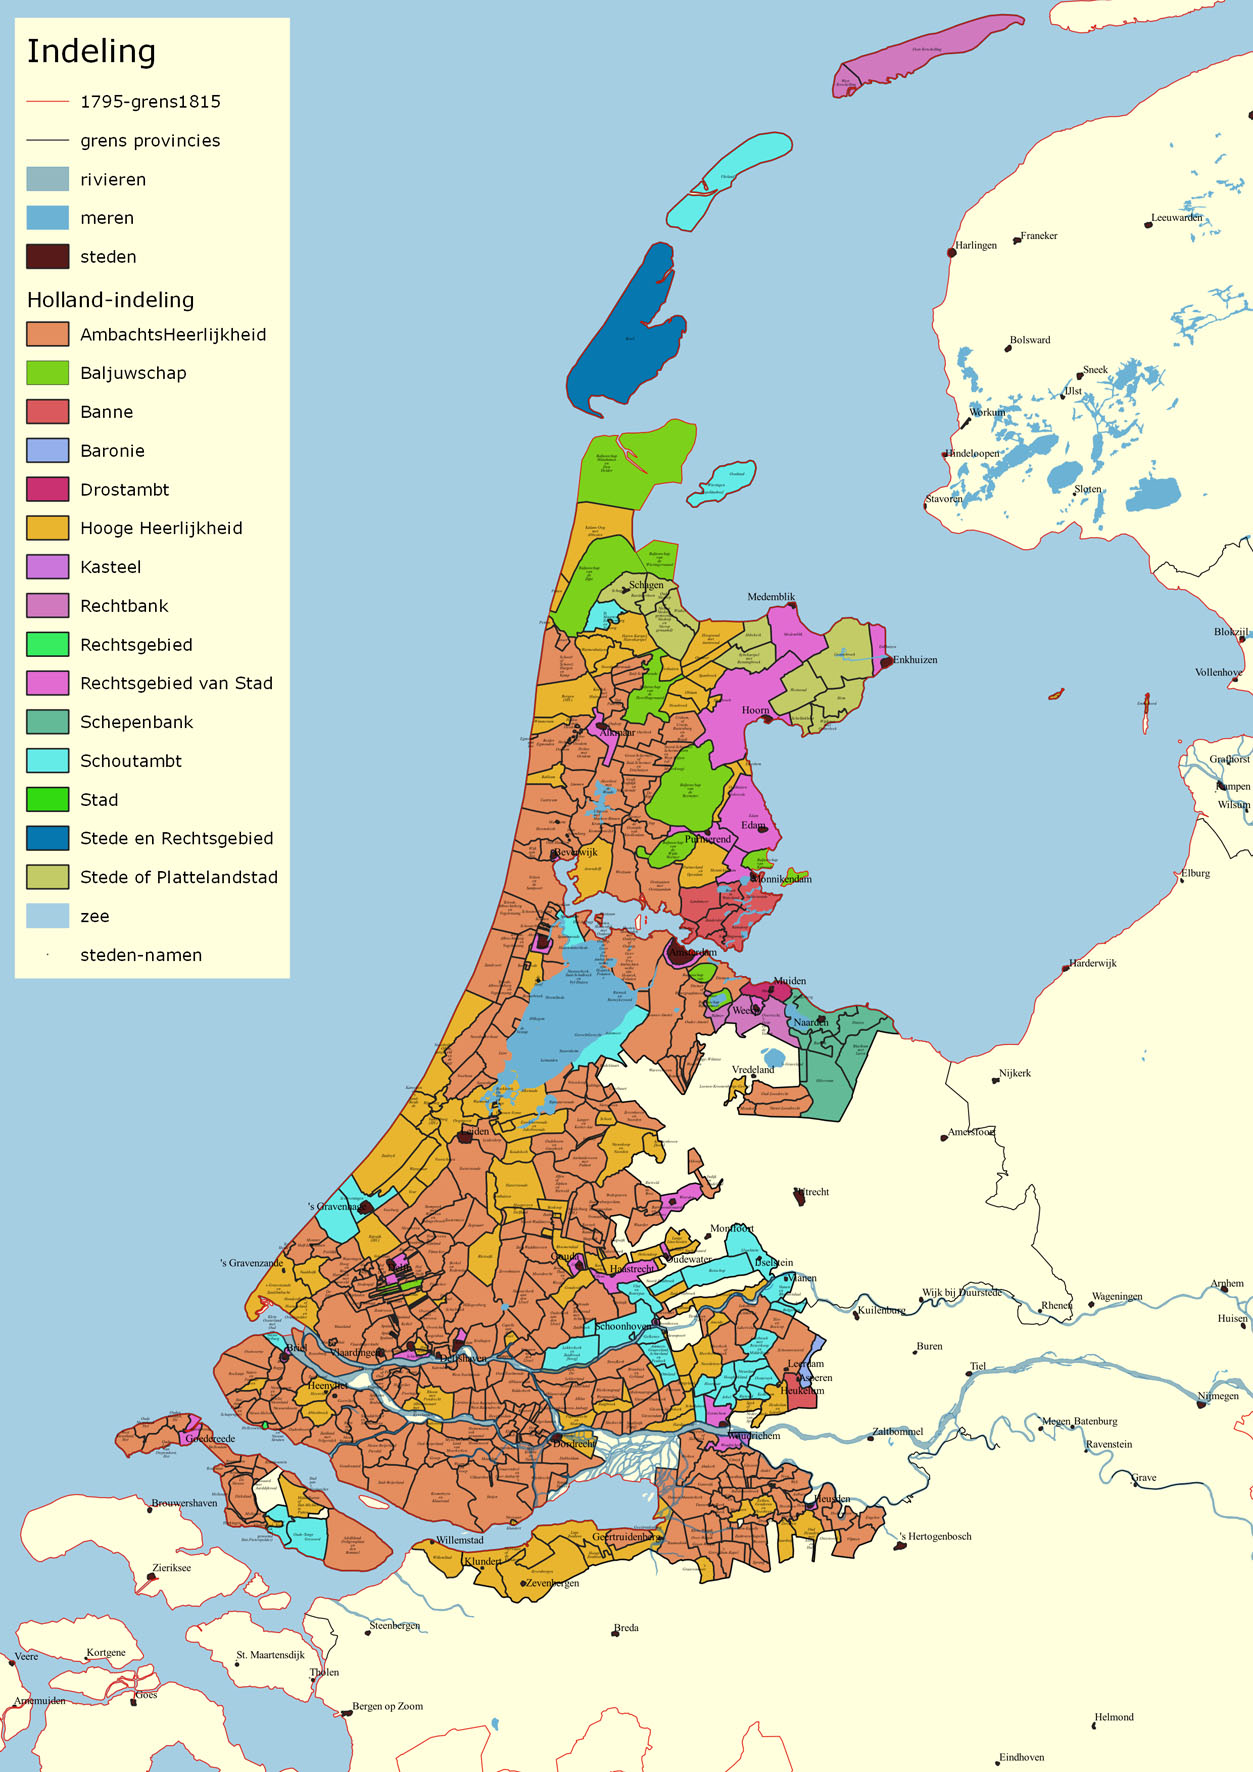 Holland indeling web